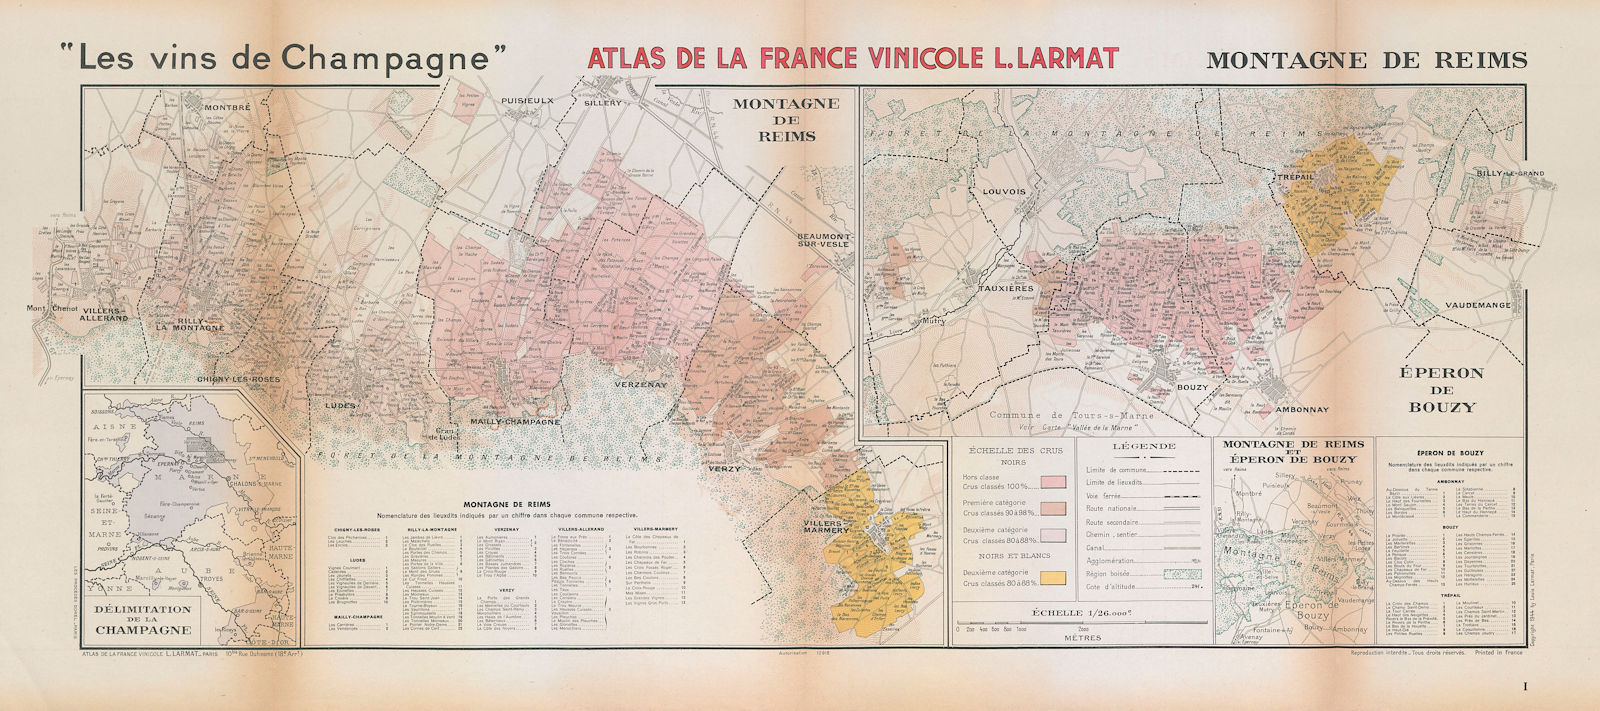 CHAMPAGNE VINEYARD MAP Montagne de Reims. Mailly. Éperon de Bouzy. LARMAT 1944